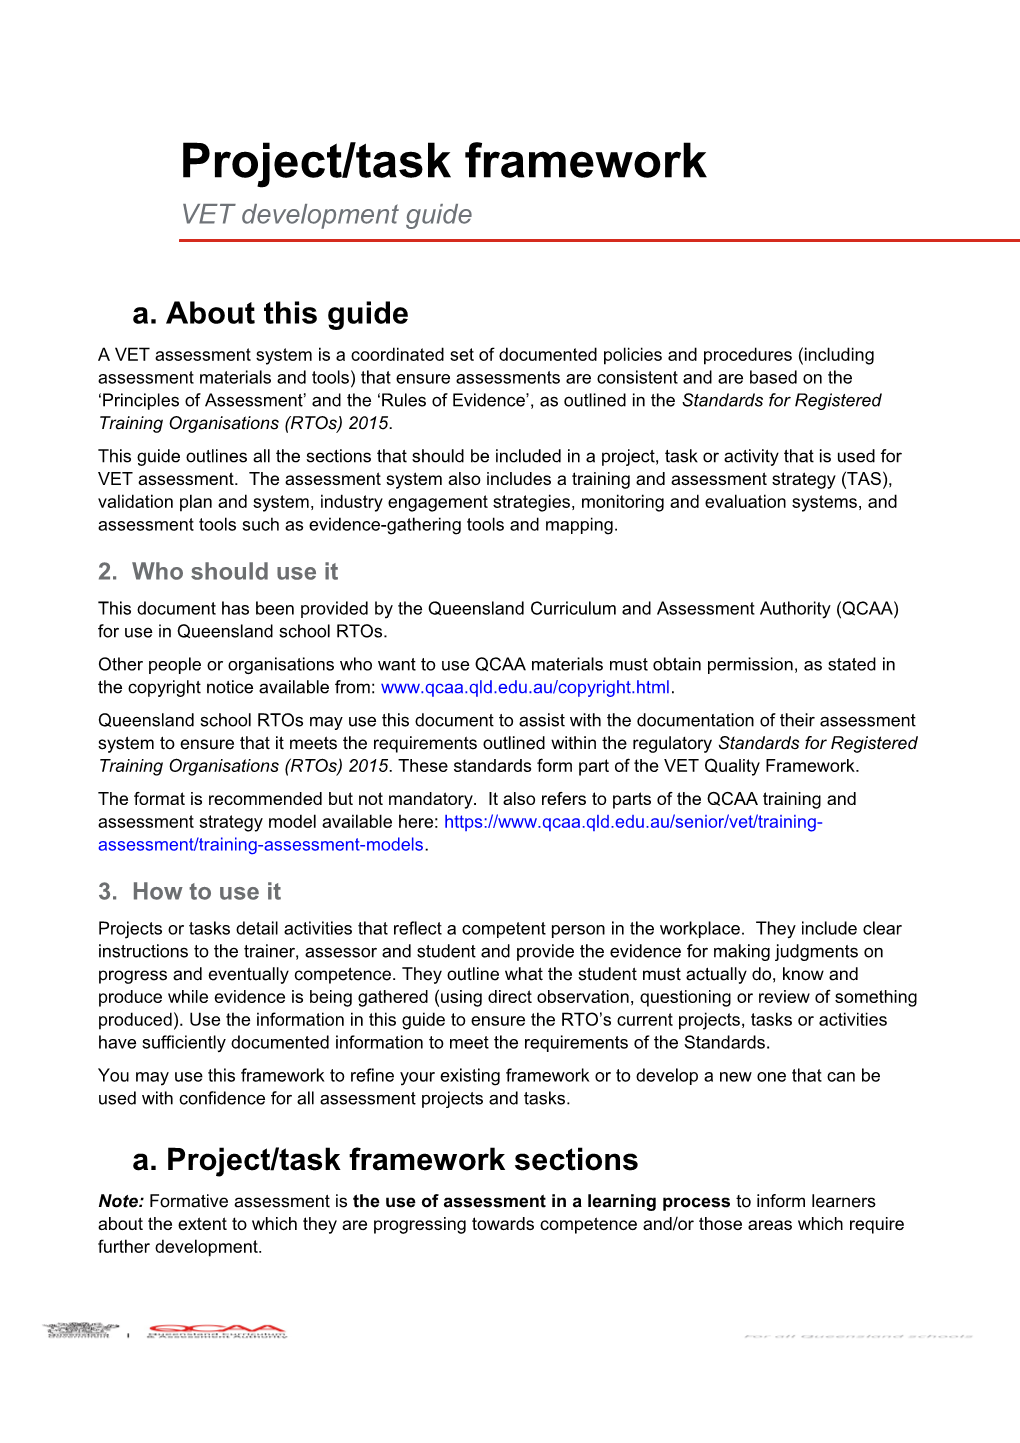 VET Development Guide: Project/Task Framework